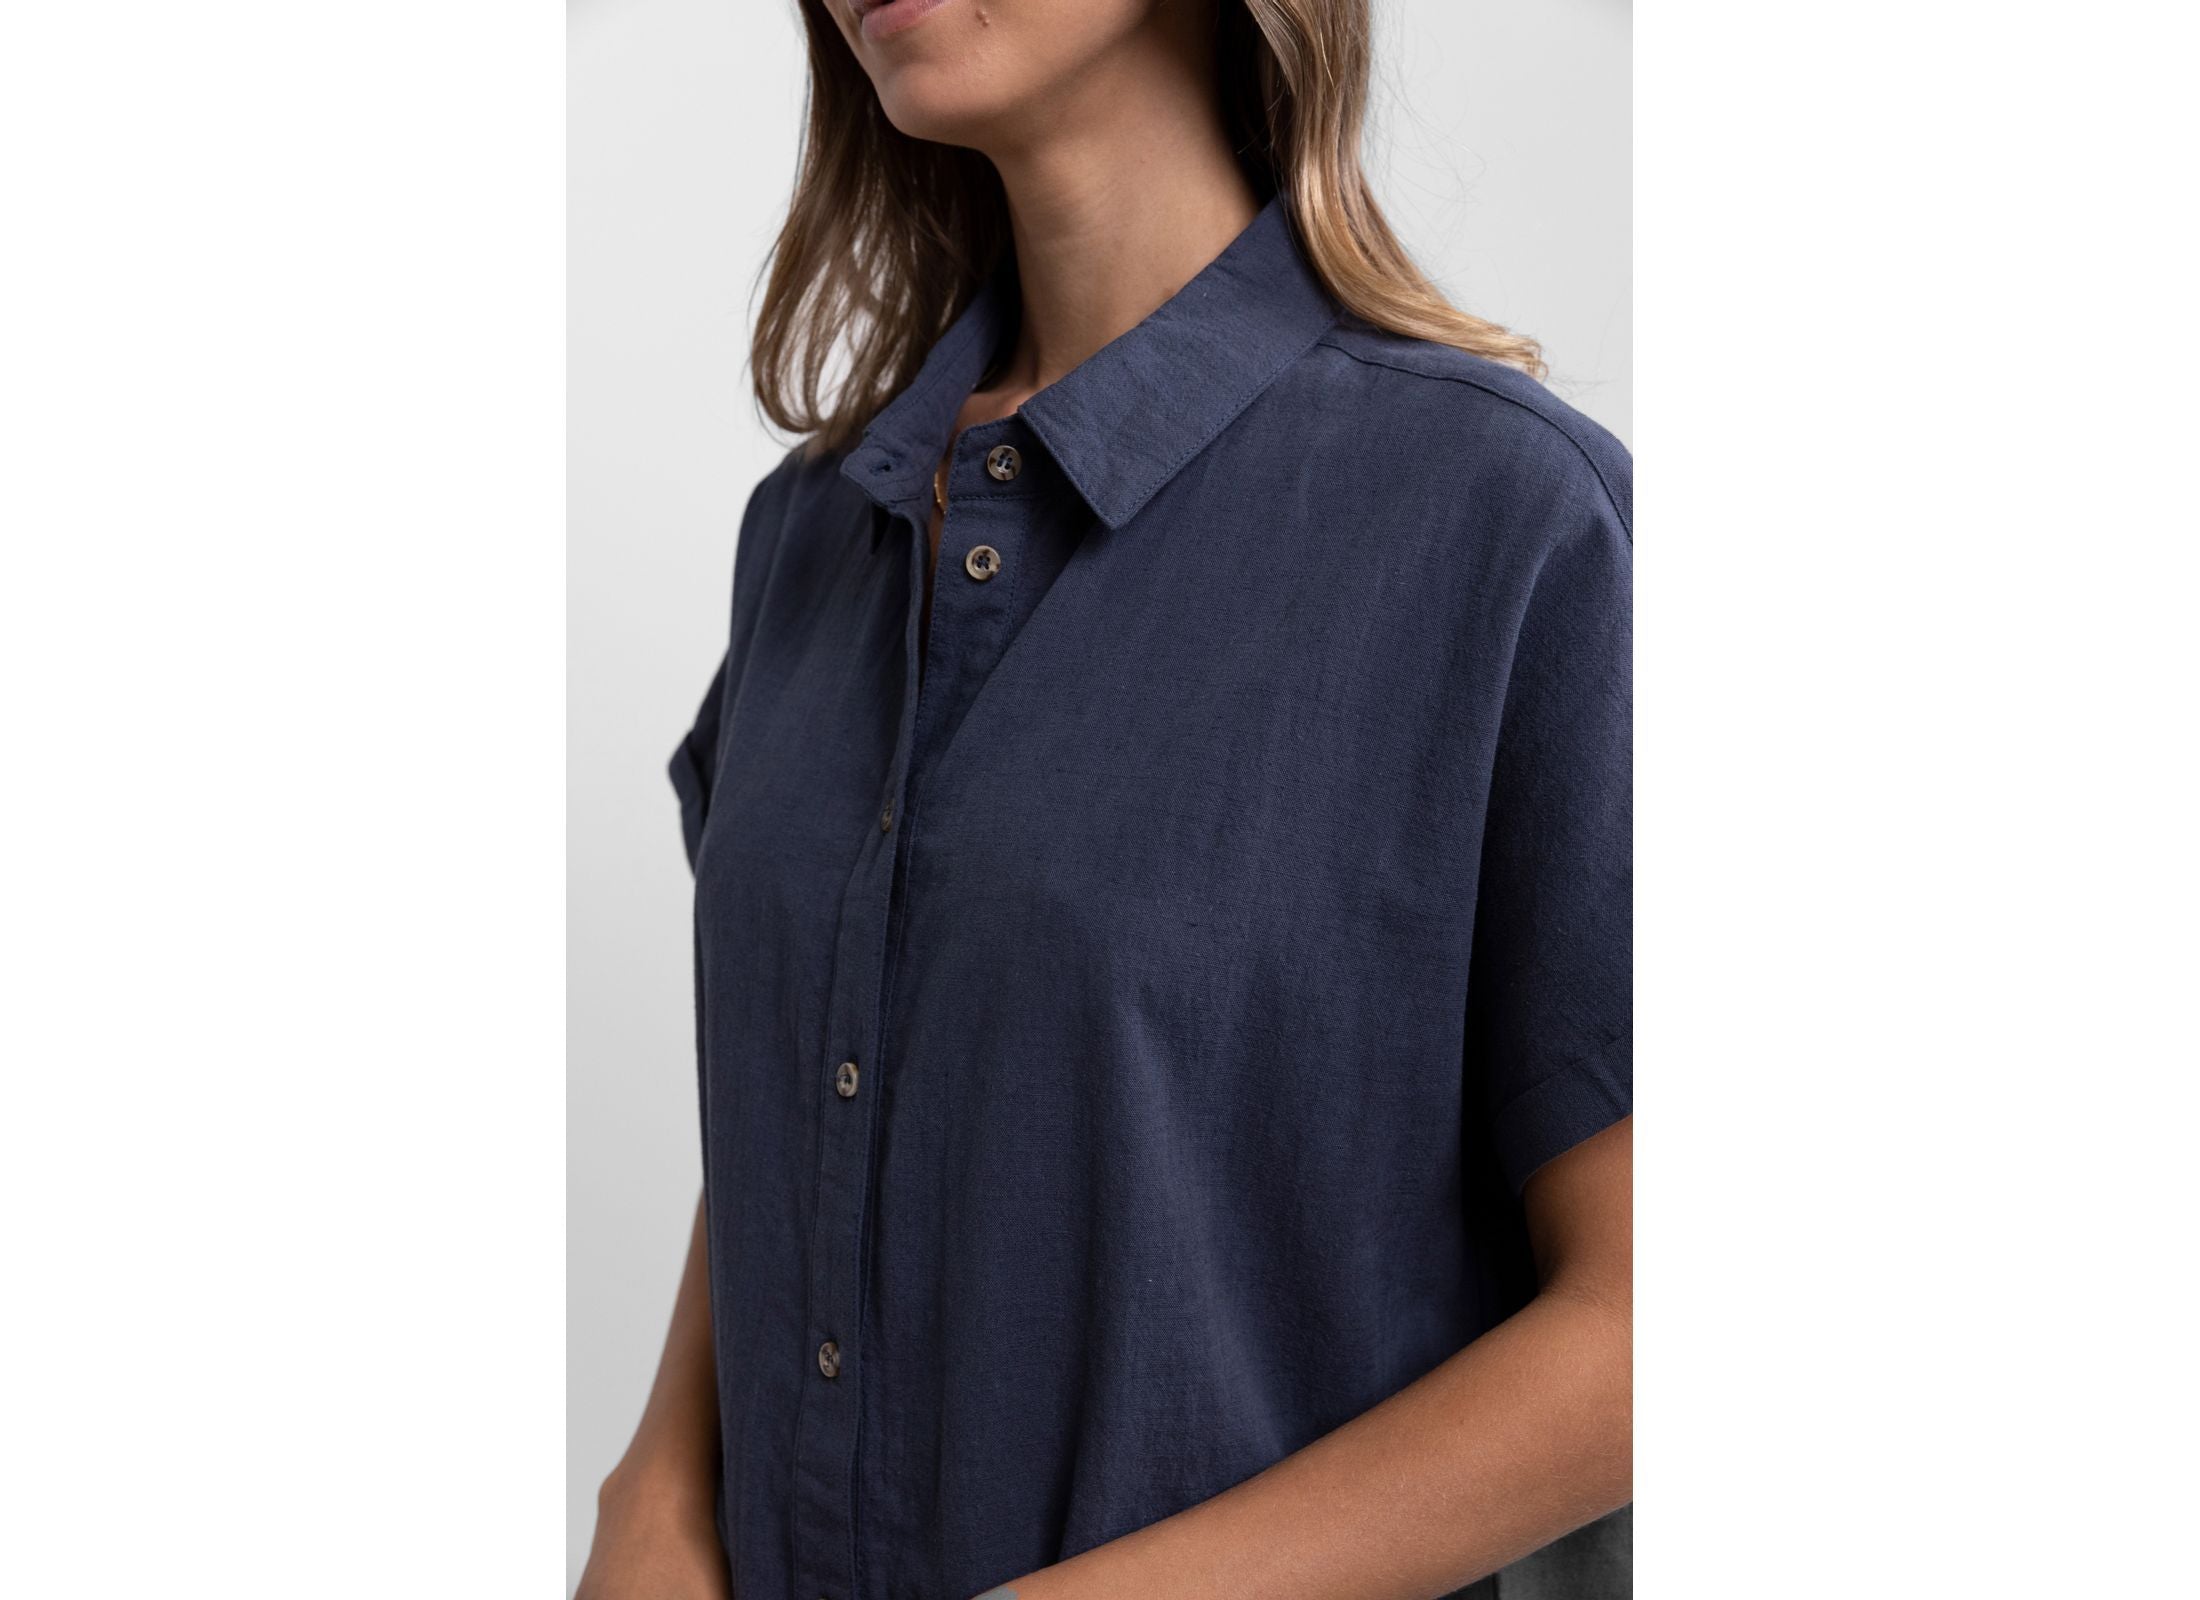 Classic Linen Shirt Dress / Worn Navy